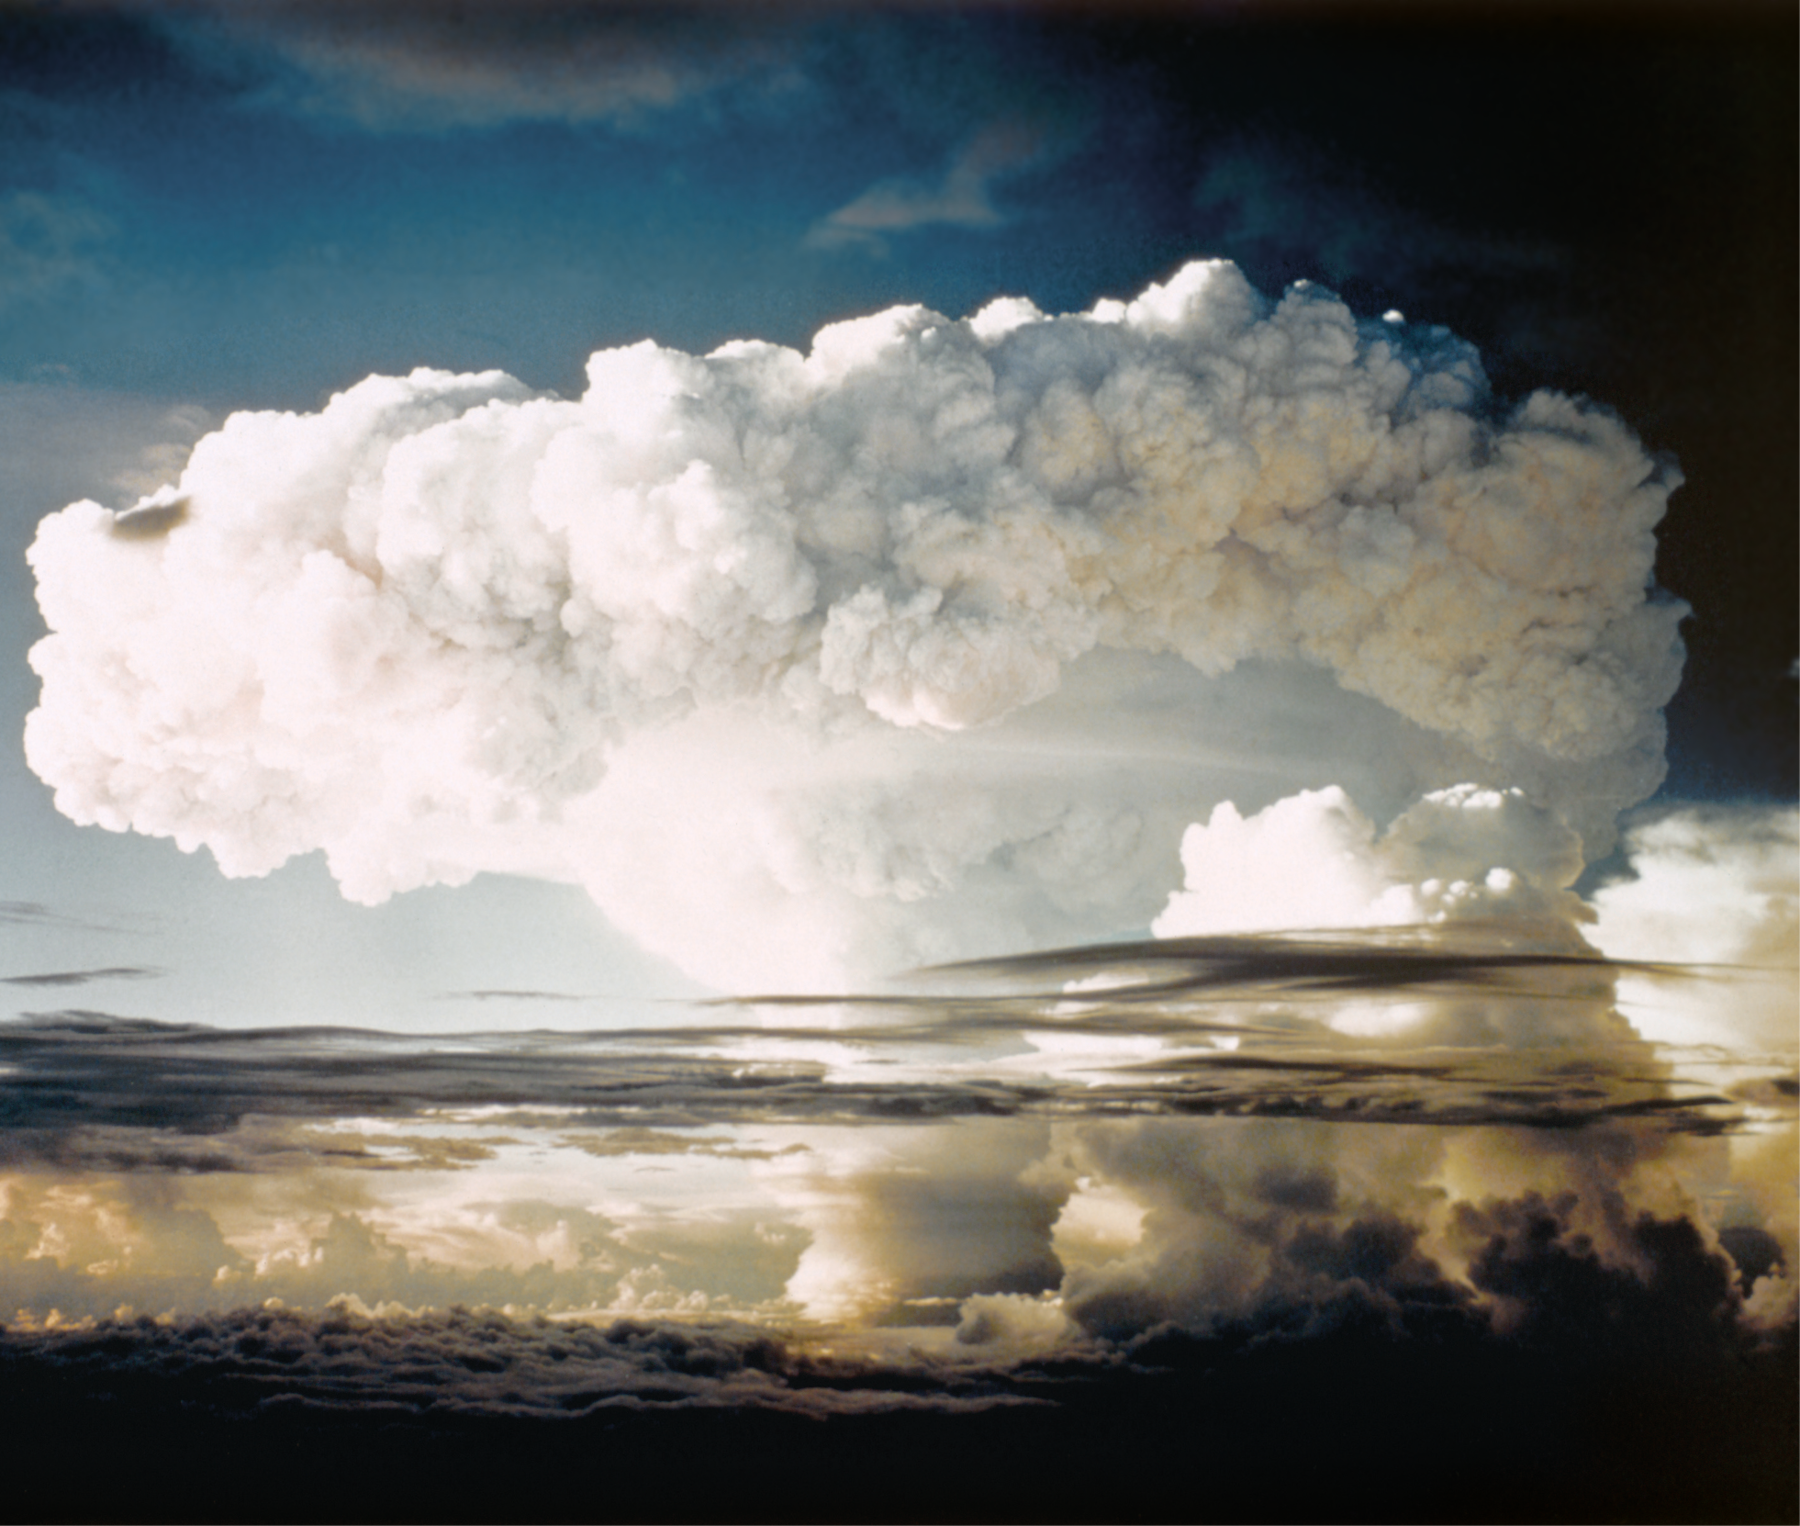 Fotografia. Grande nuvem de explosão nuclear com bomba de hidrogênio em uma ilha. Ao fundo, céu azul.